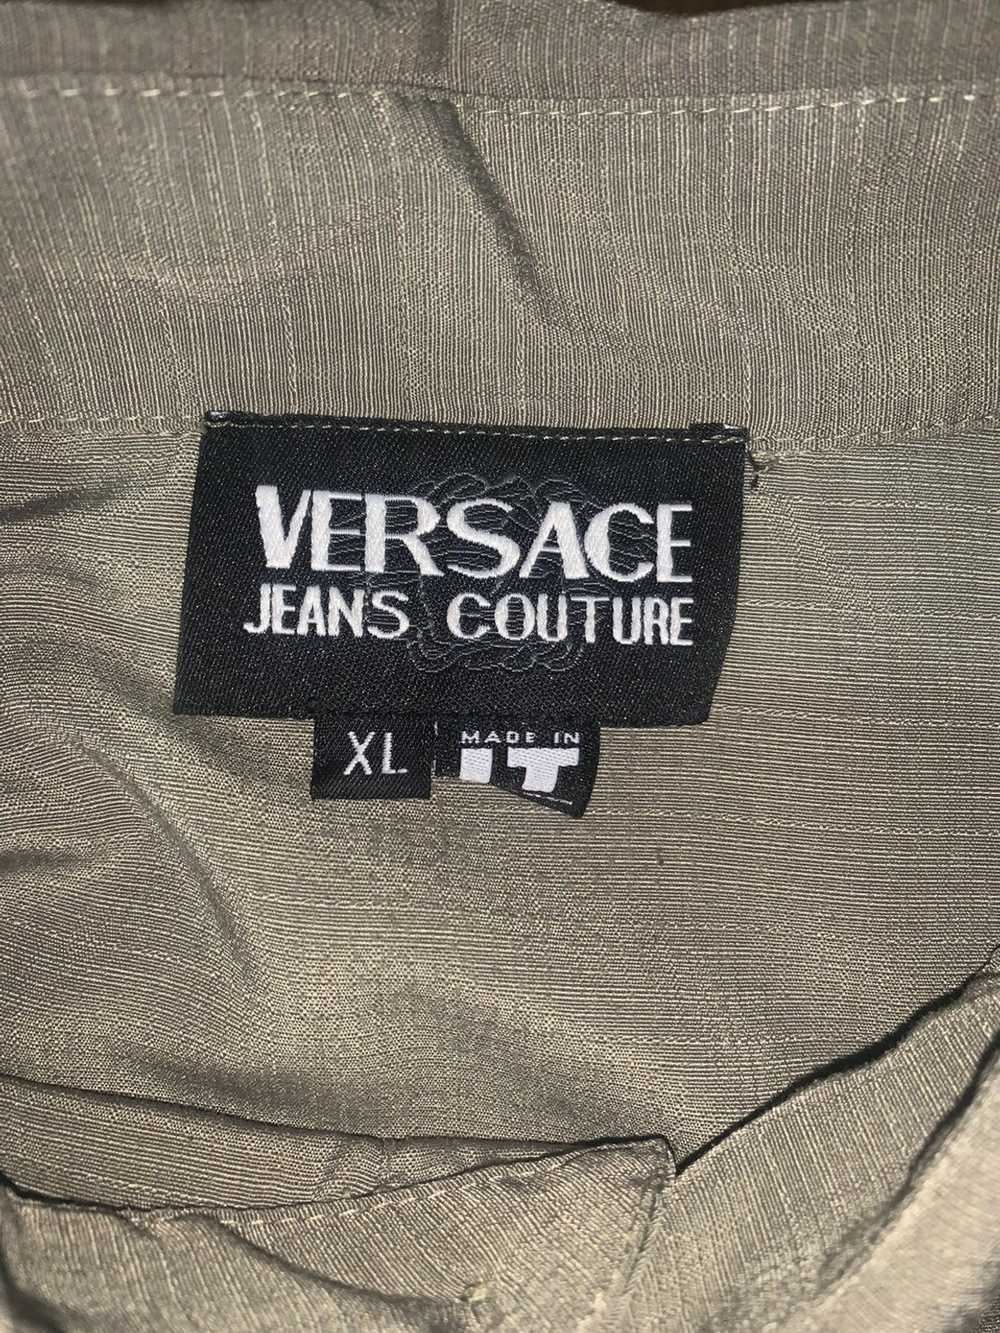 Versace Jeans Couture Versace jeans couture shirt - image 3